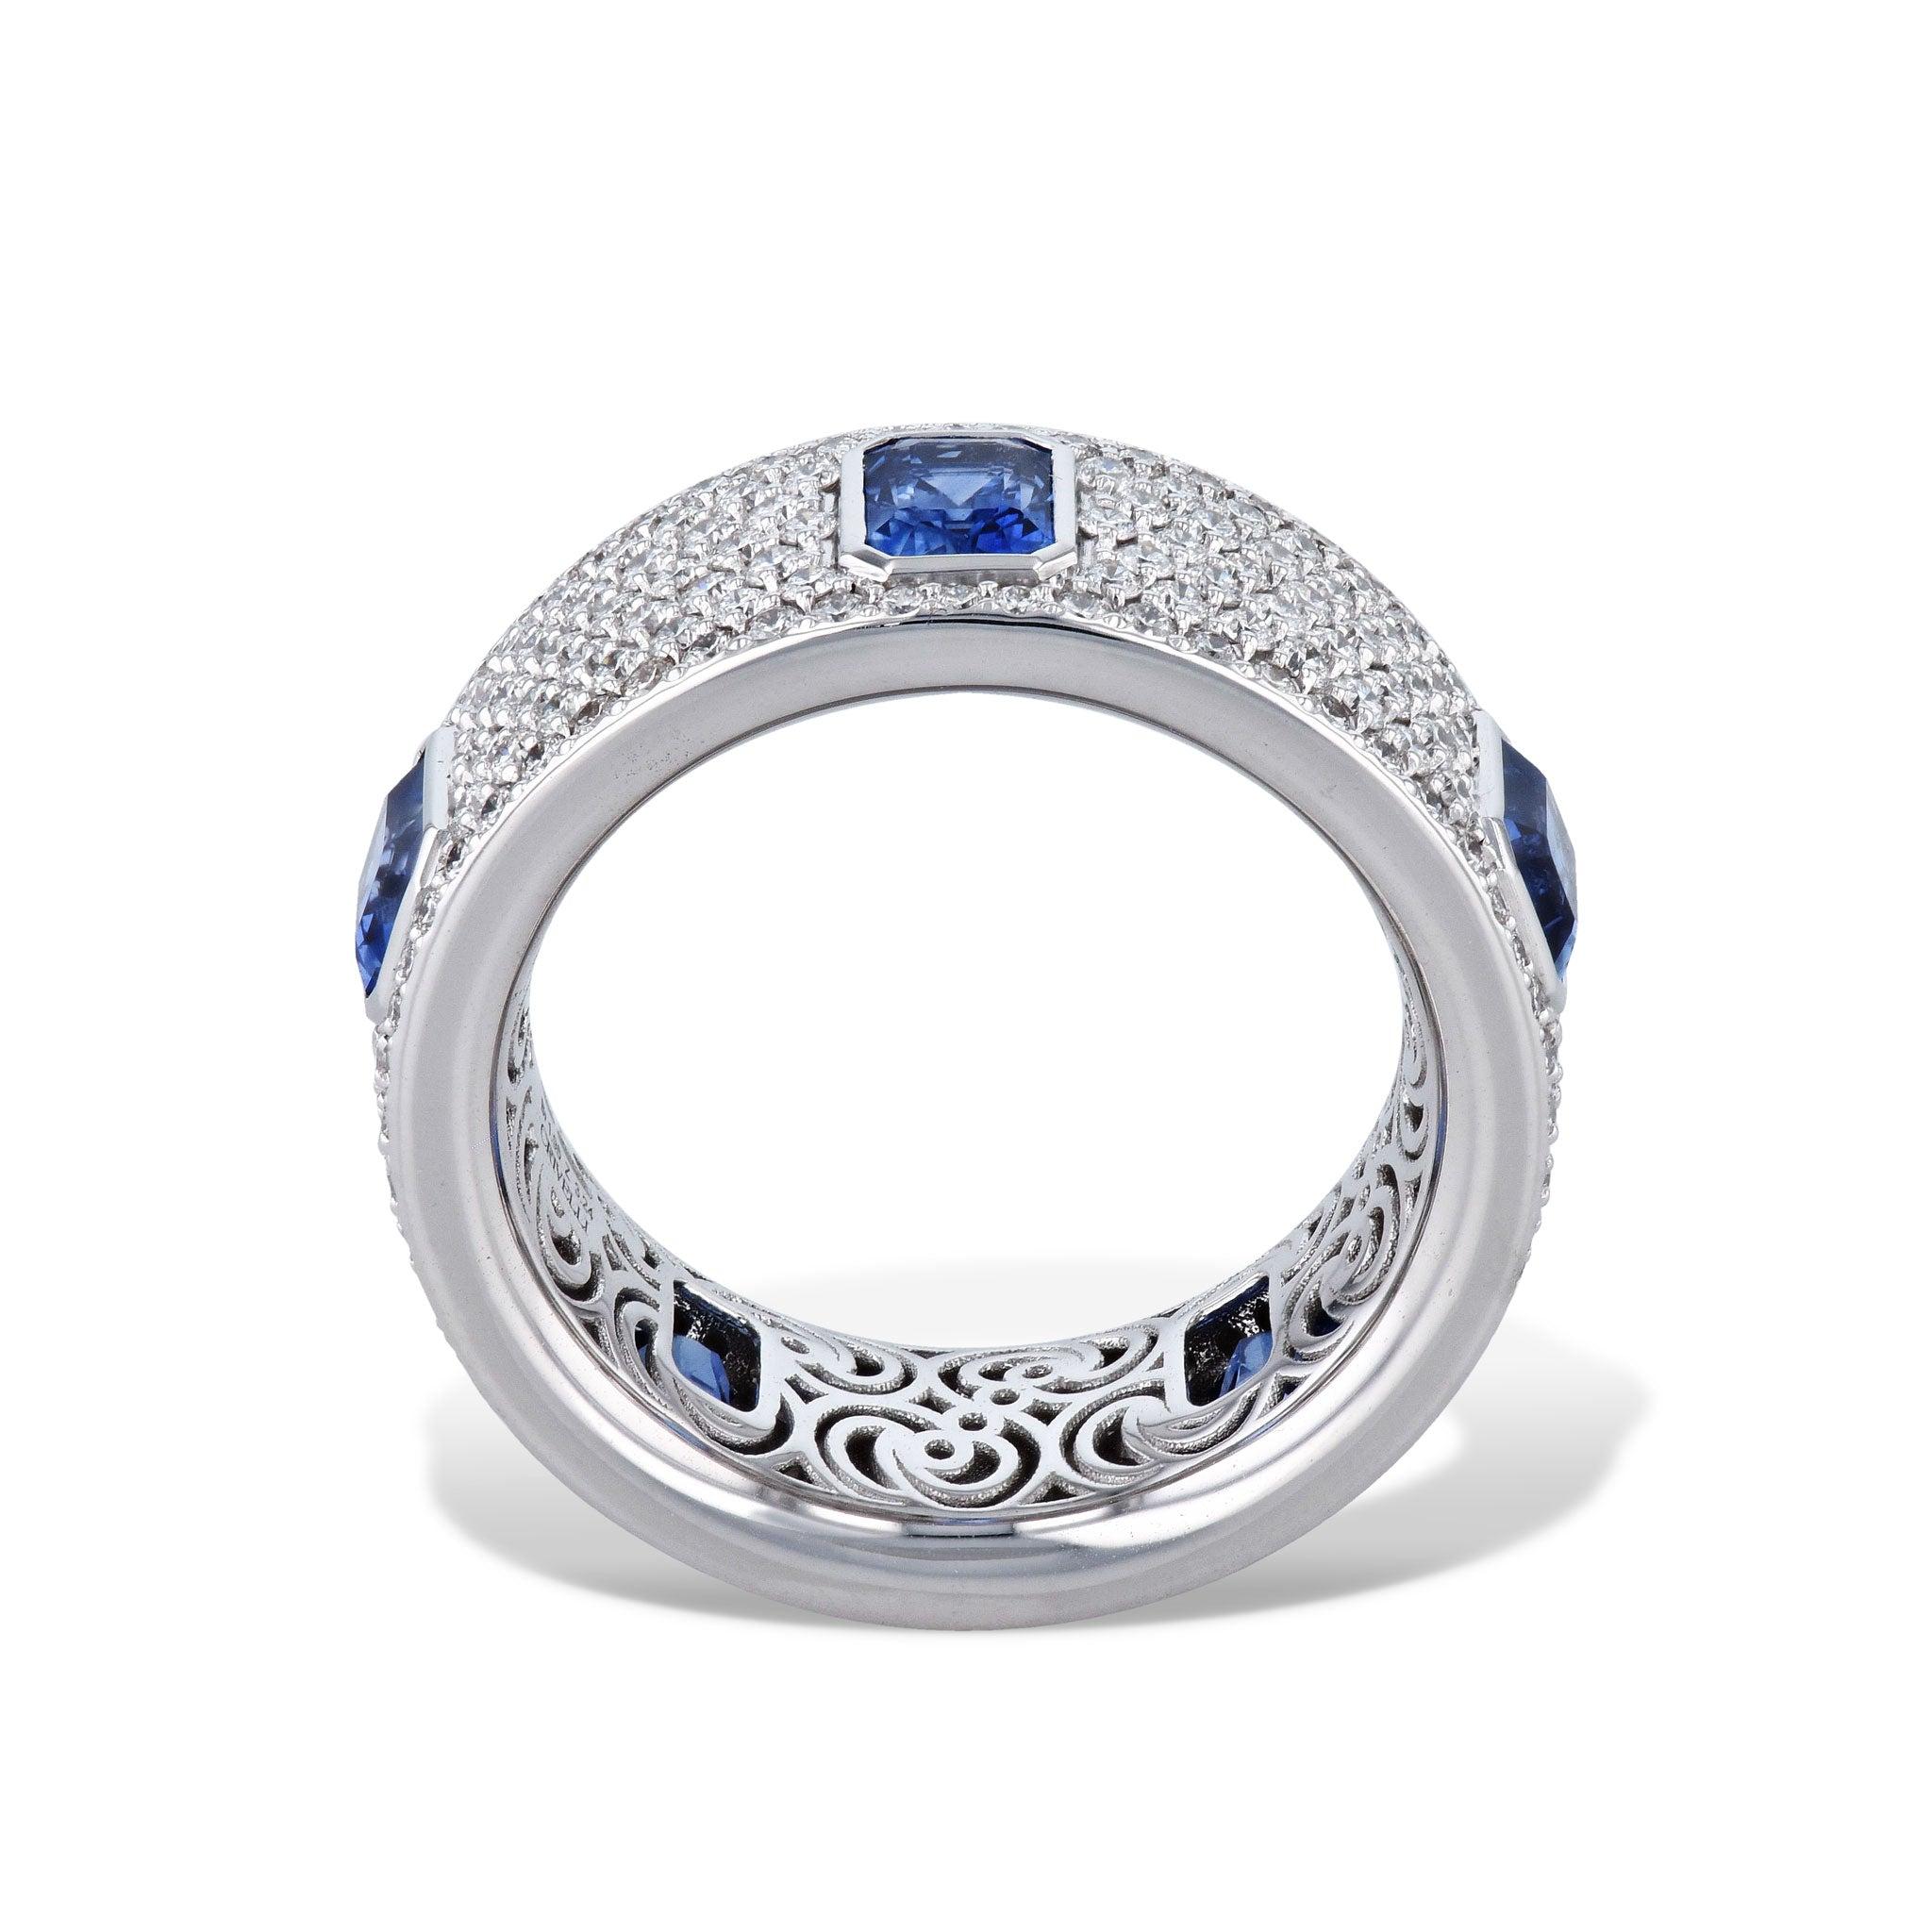 Dieser Ring mit blauem Saphir und Diamanten ist ein echter Hingucker.
Die Steine sind in luxuriöses 18 Karat Weißgold gefasst.
Blauer Saphir Diamant Pave Ring.

-3,24ct Blauer Saphir.
-1,96ct TW Diamant F-VS.
-18kt. Weißes Gold.

Größe 6.75

